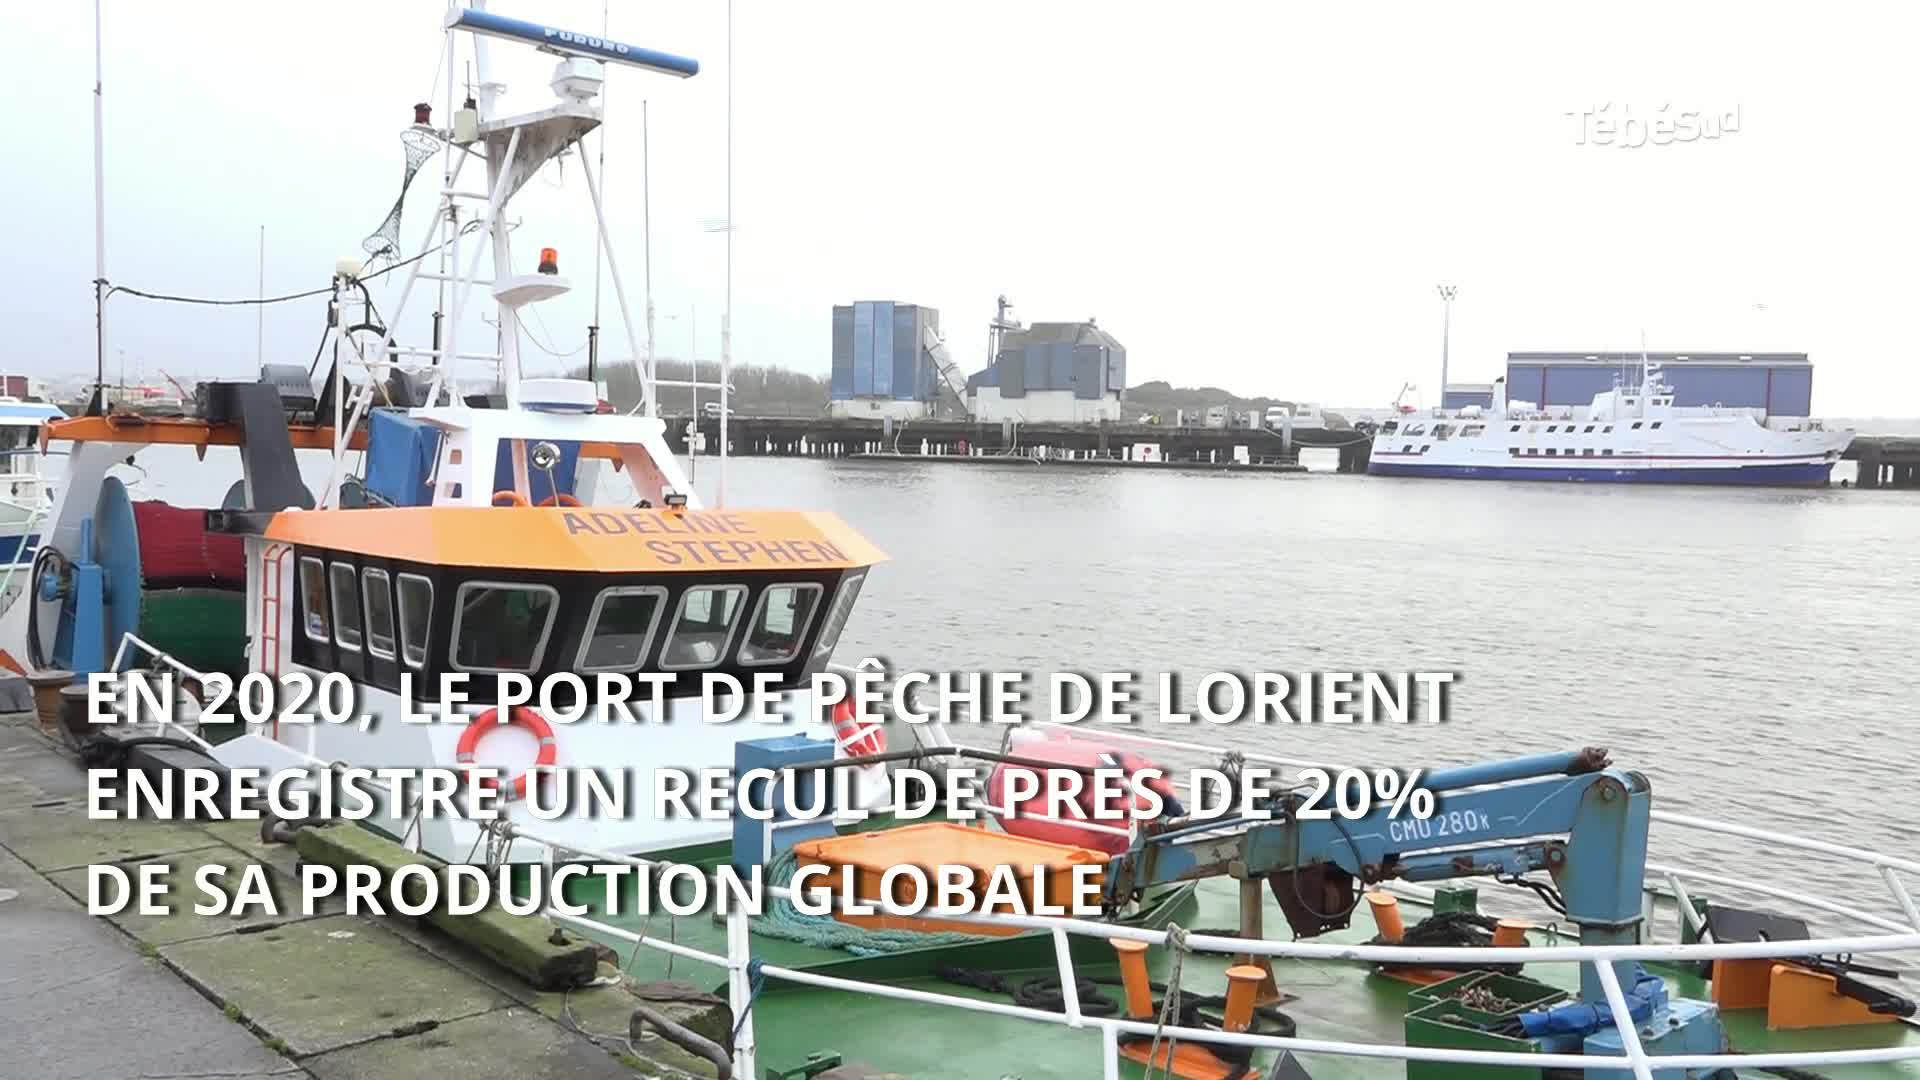 Port de pêche de Lorient : "Il faut reconquérir les marchés" (Le Télégramme)